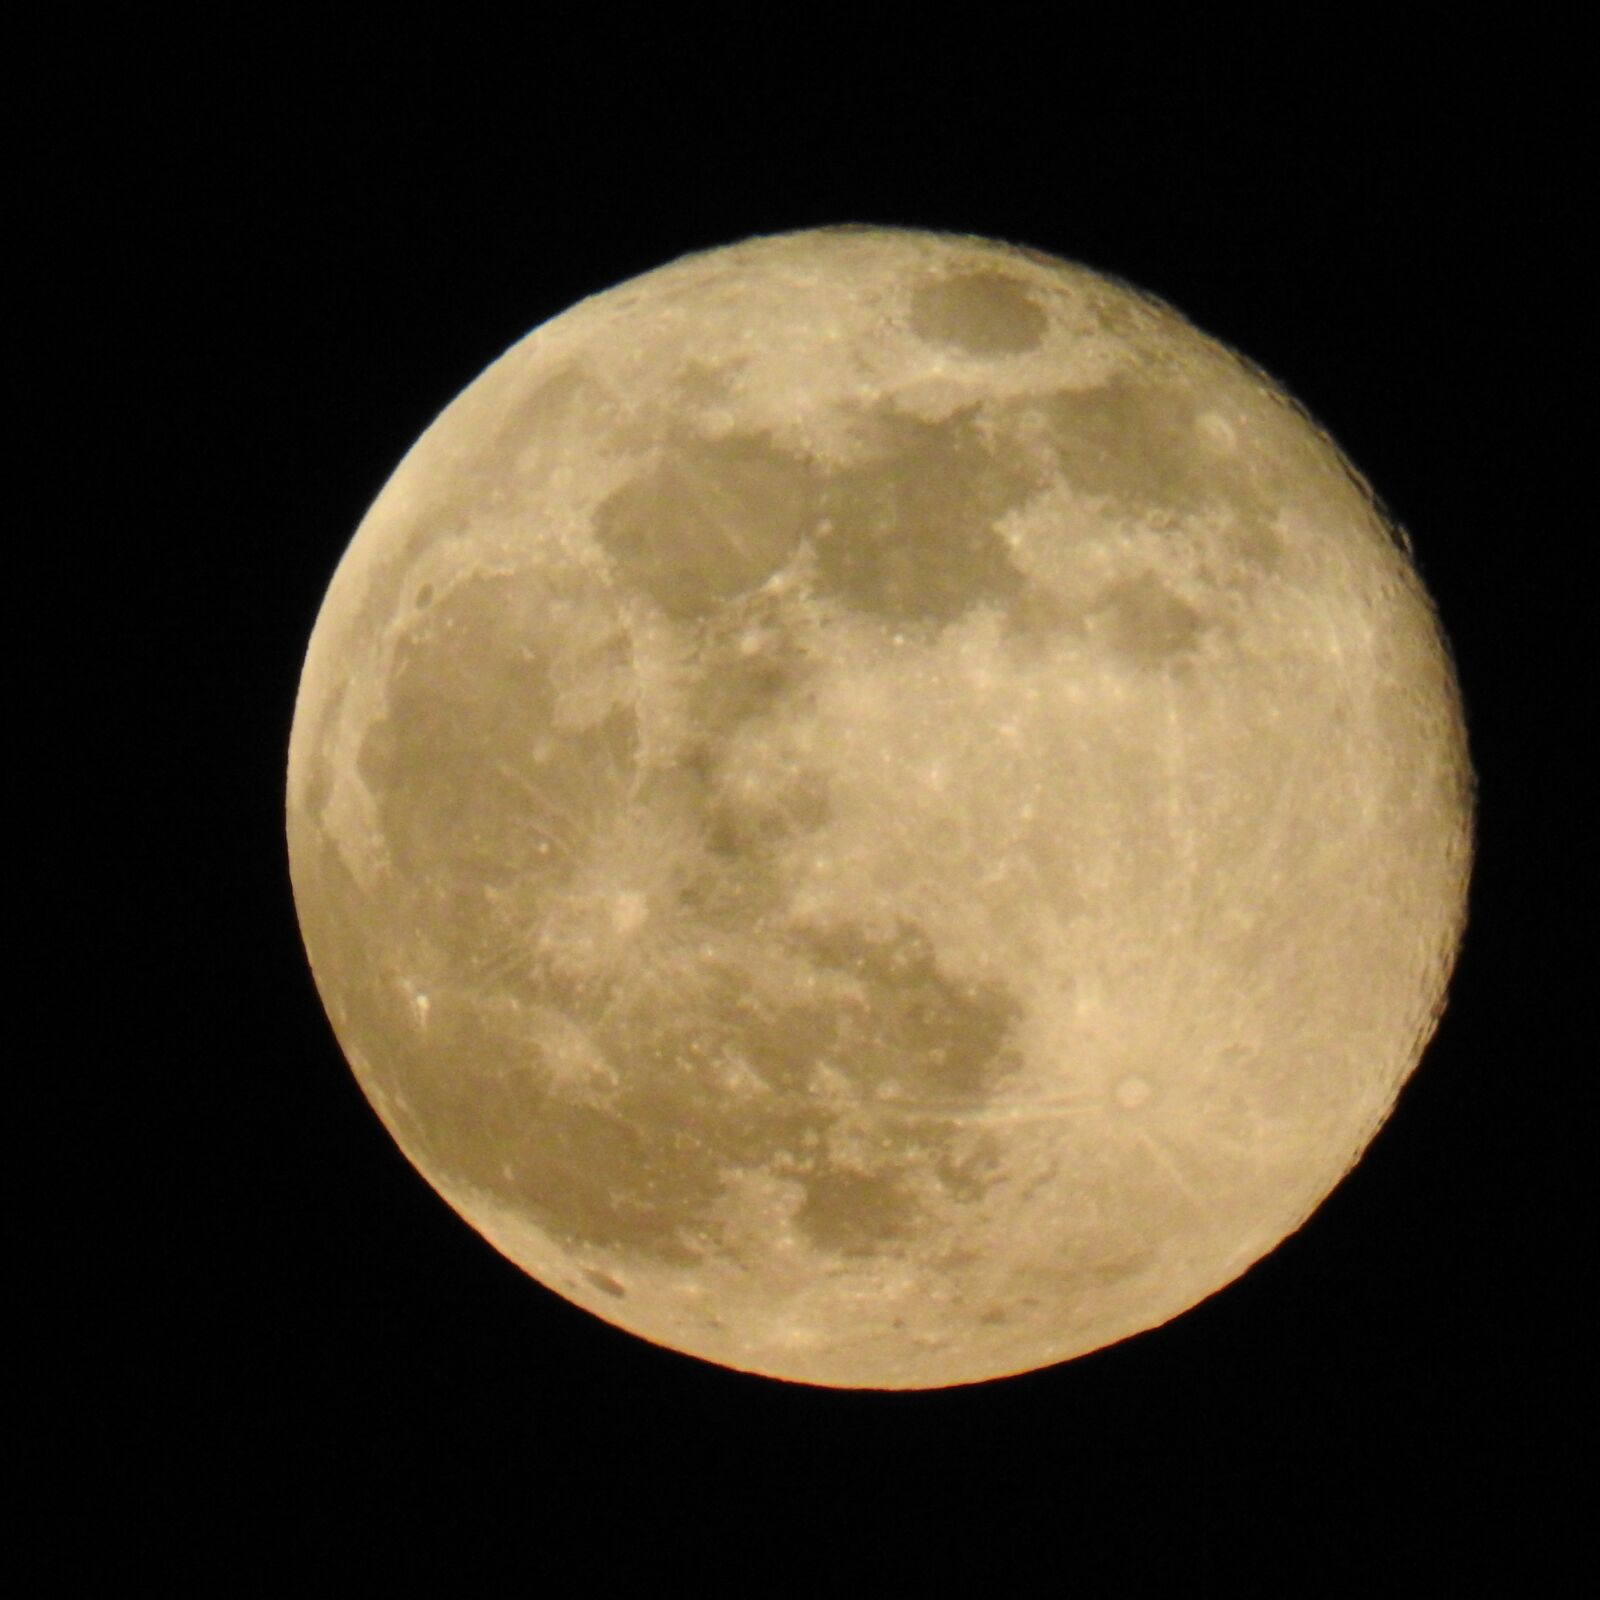 Nikon Coolpix P900 sample photo. Moon, luna, sky photography